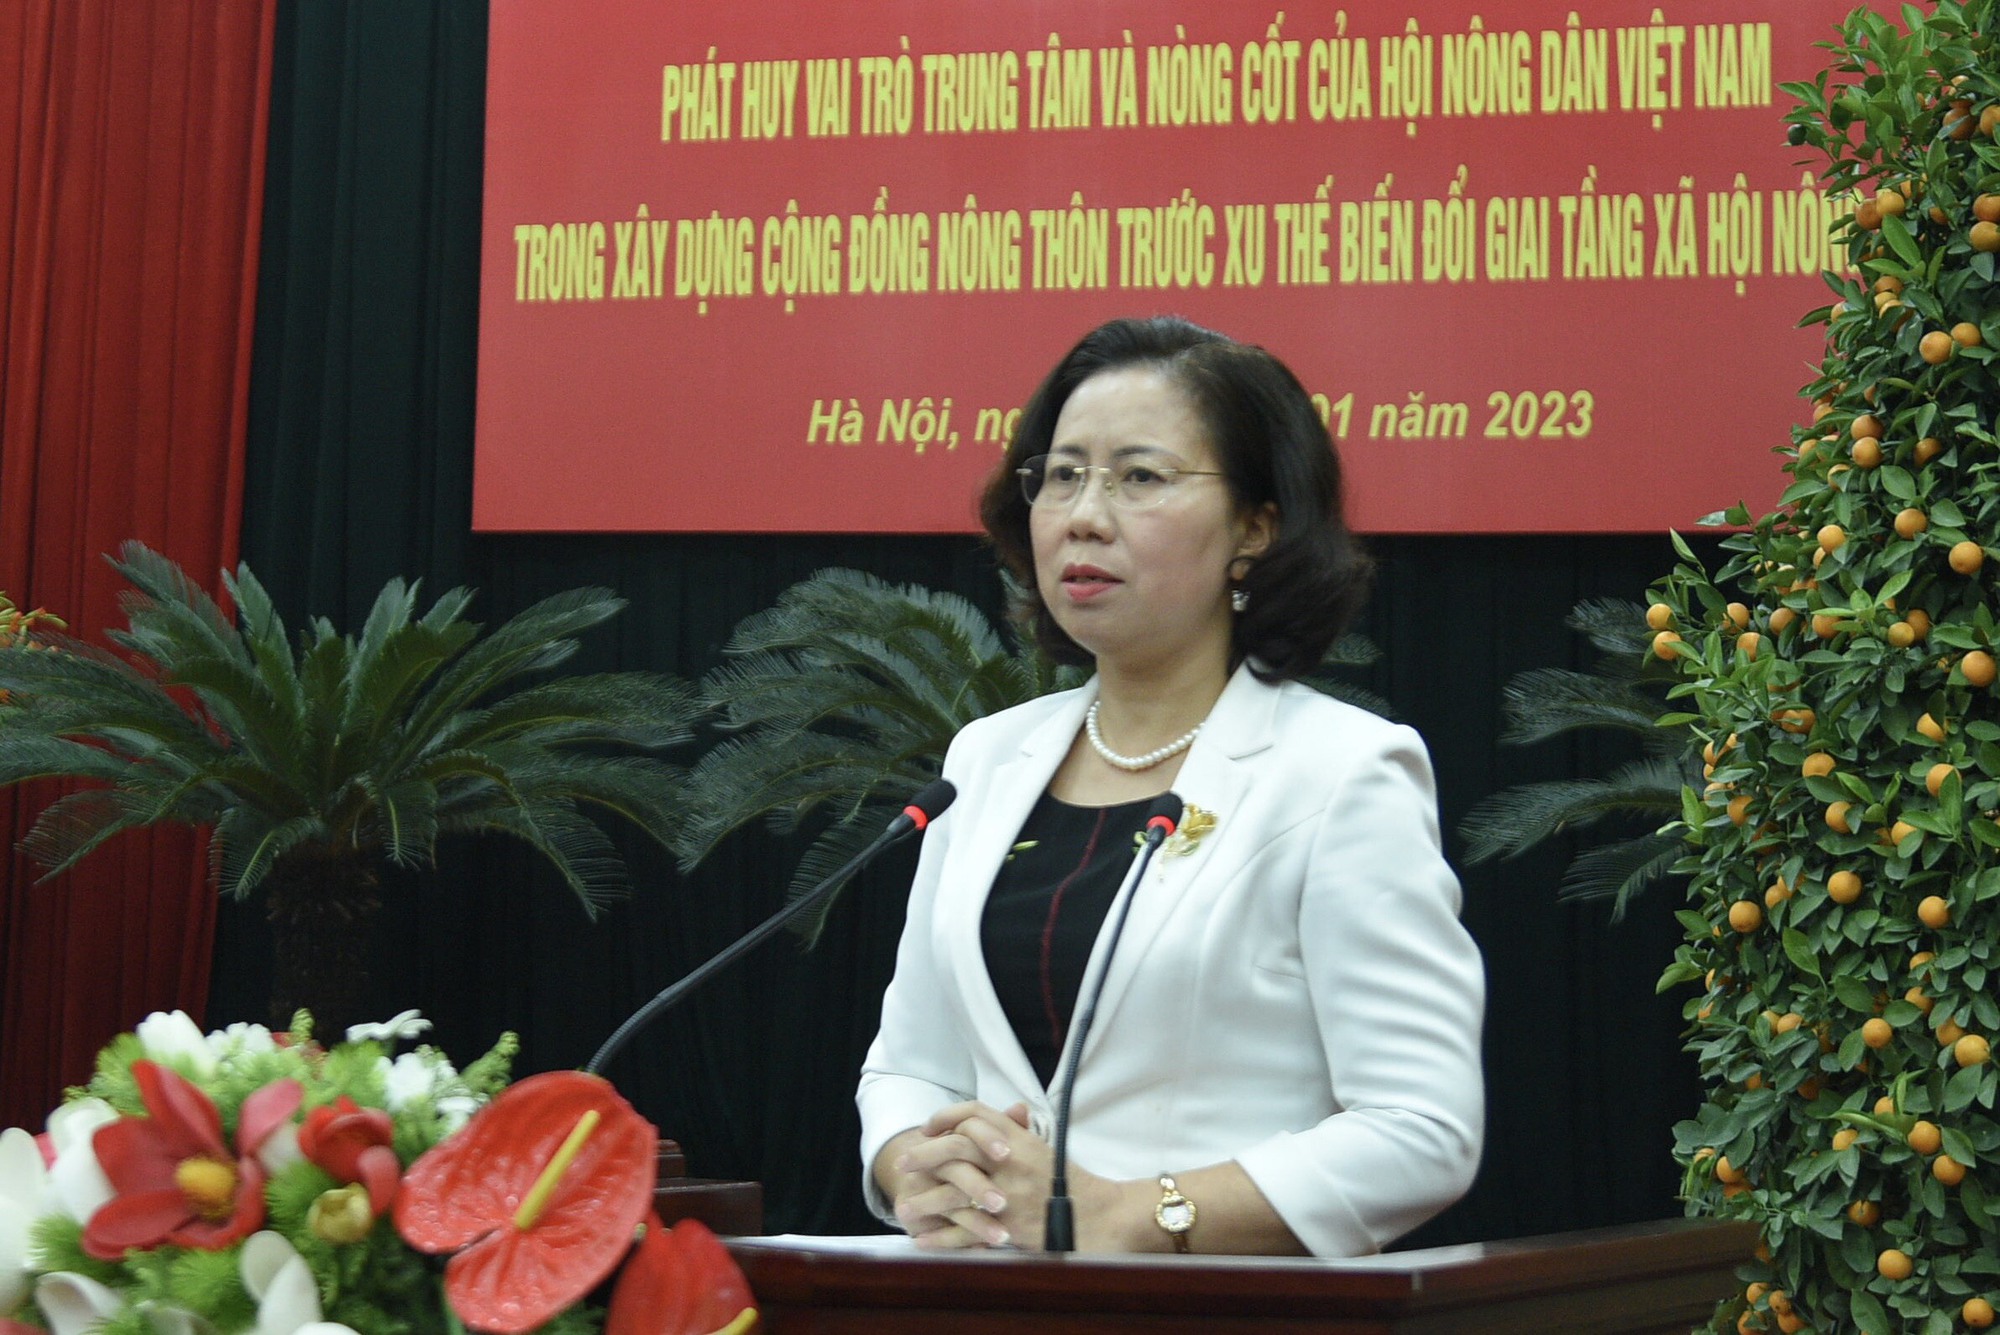 Phát huy vai trò trung tâm và nòng cốt của Hội Nông dân Việt Nam trong xây dựng cộng đồng nông thôn - Ảnh 1.